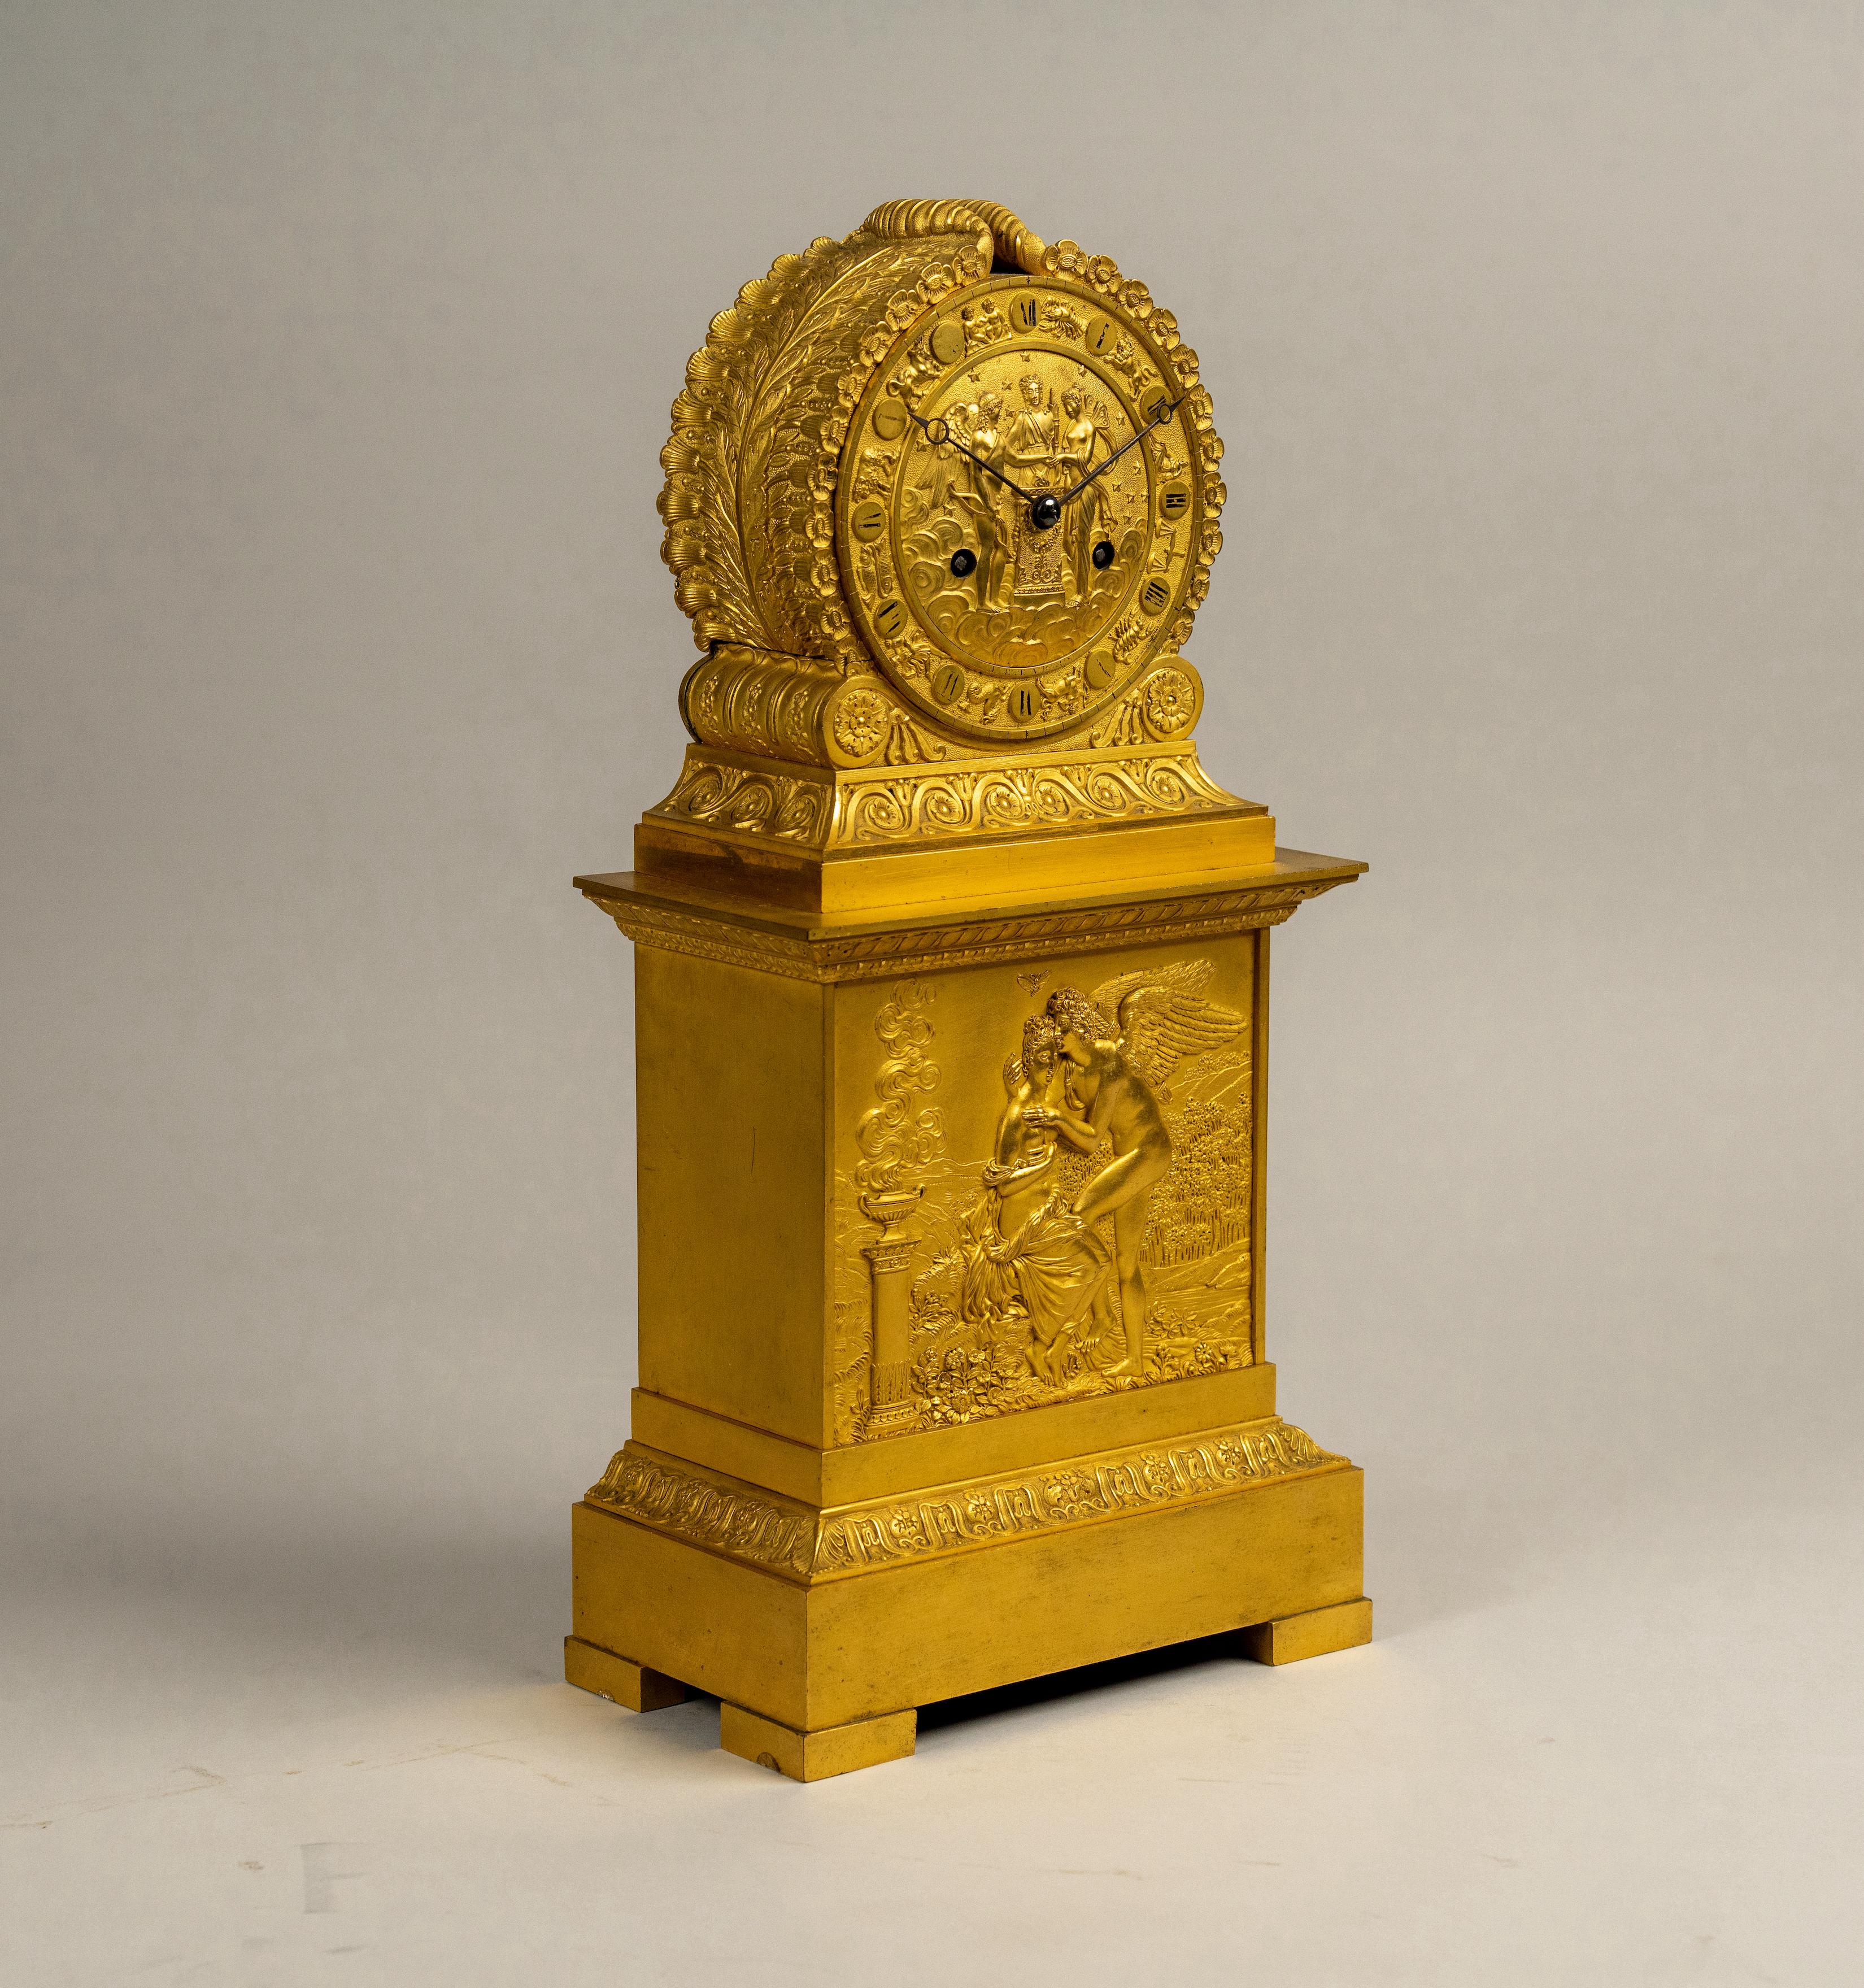 Exquisite handgemeißelte Goldbronze-Kaminsimsuhr, französisches Empire, 19. Jahrhundert. Auf Klammerfüßen und einem rechteckigen Sockel stehend. Darüber befindet sich eine prächtige Tafel mit Psyche und Amor, die sich in der Nähe eines klassischen